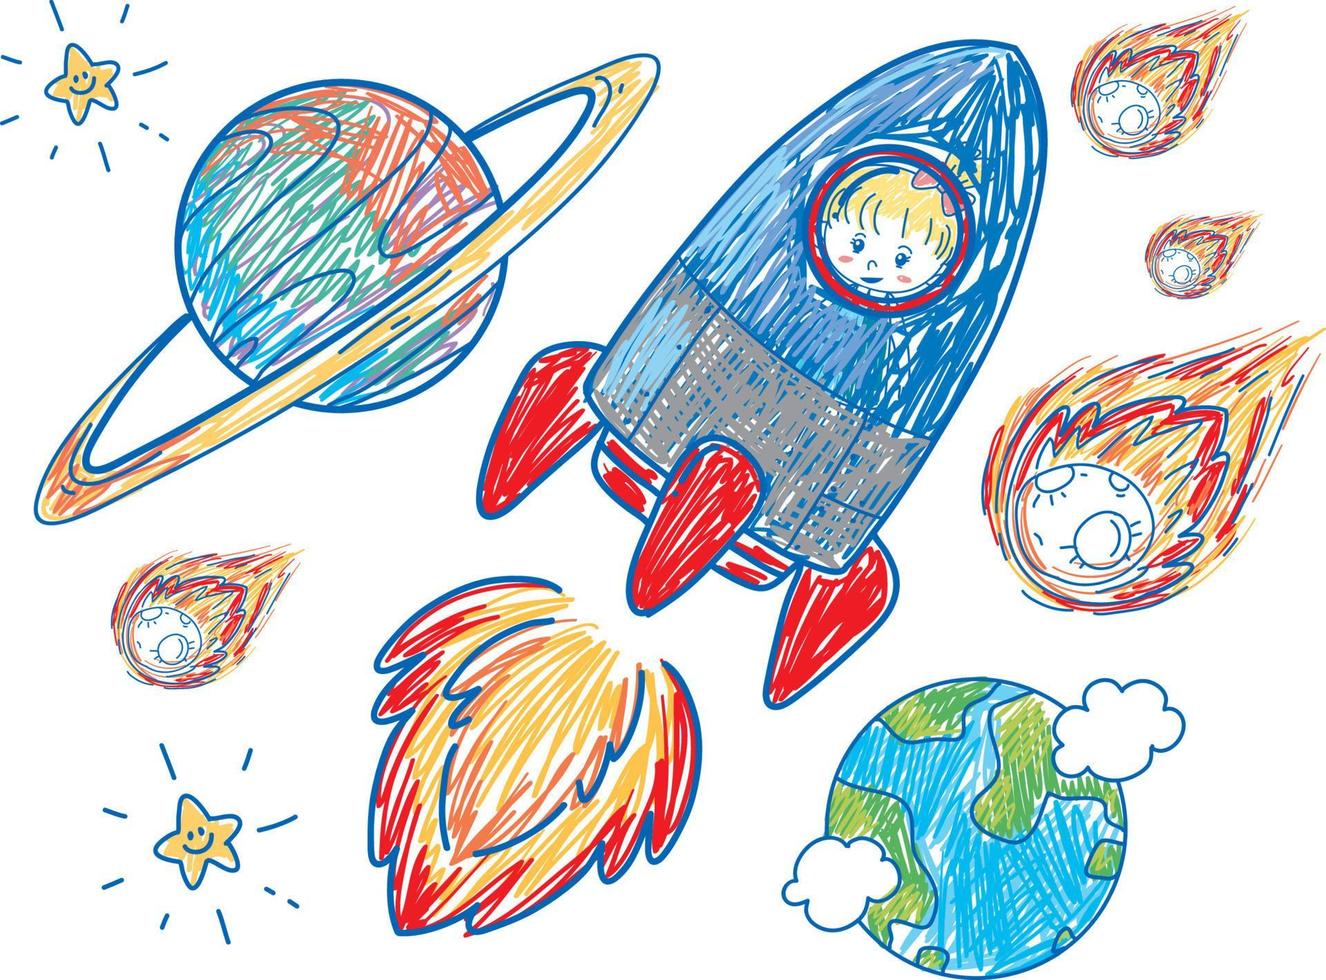 coleção de naves espaciais desenhadas à mão colorida vetor